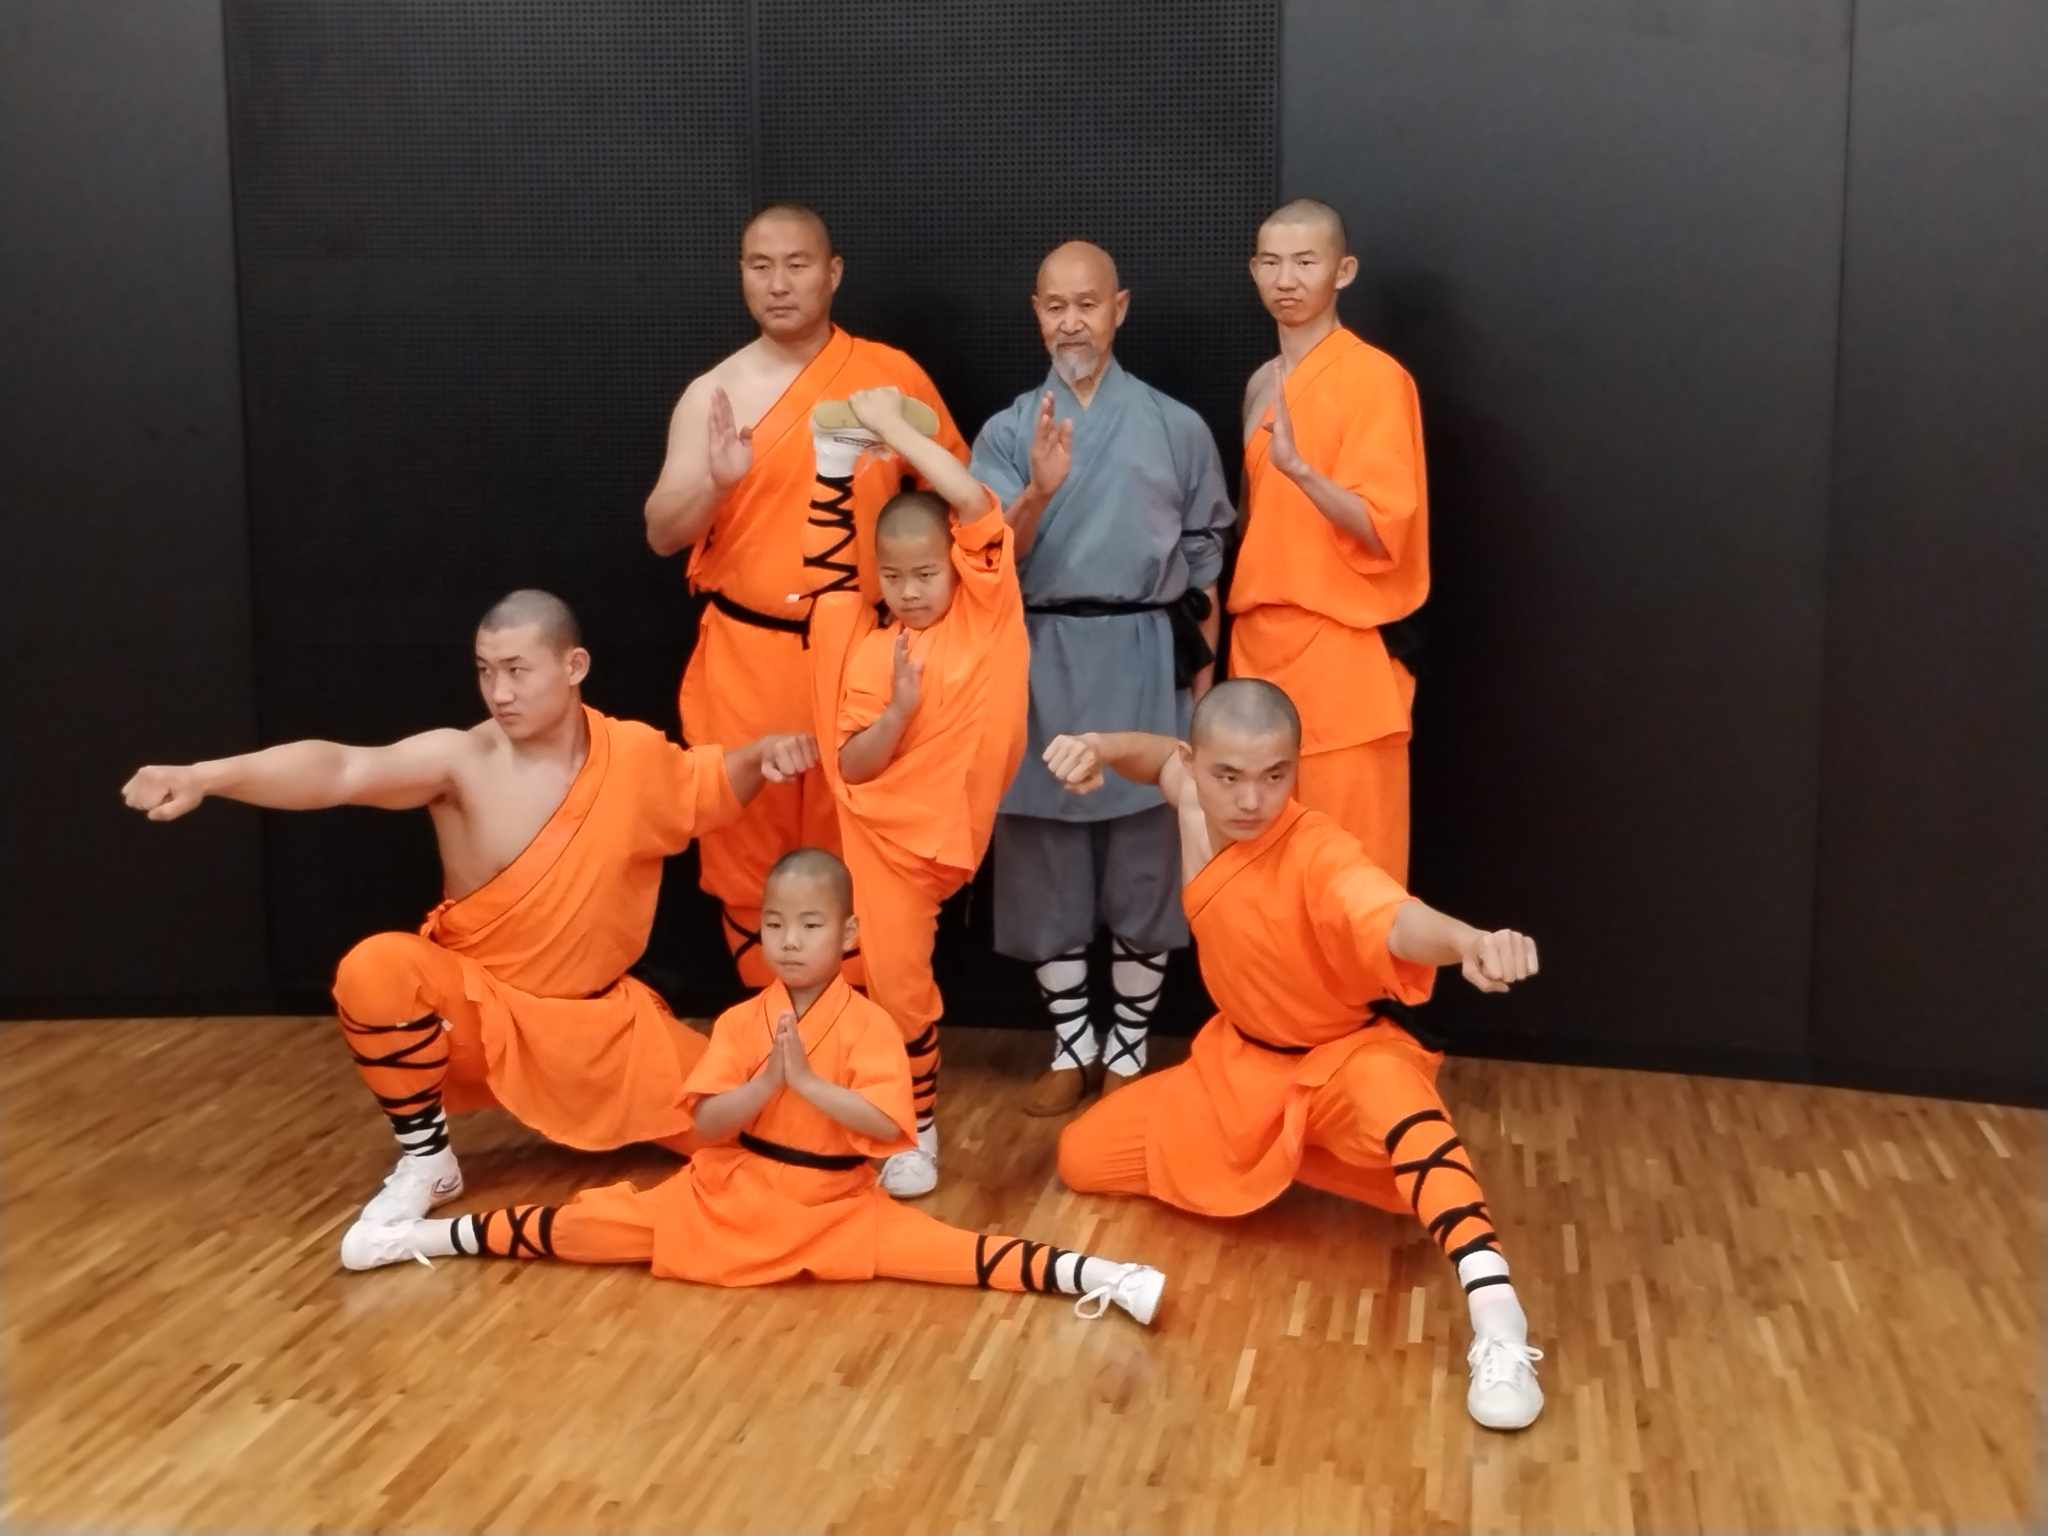 Shaolin Show live: Fascinující návrat tradičního bojového umění Kung-fu a kultury Shaolin do České republiky